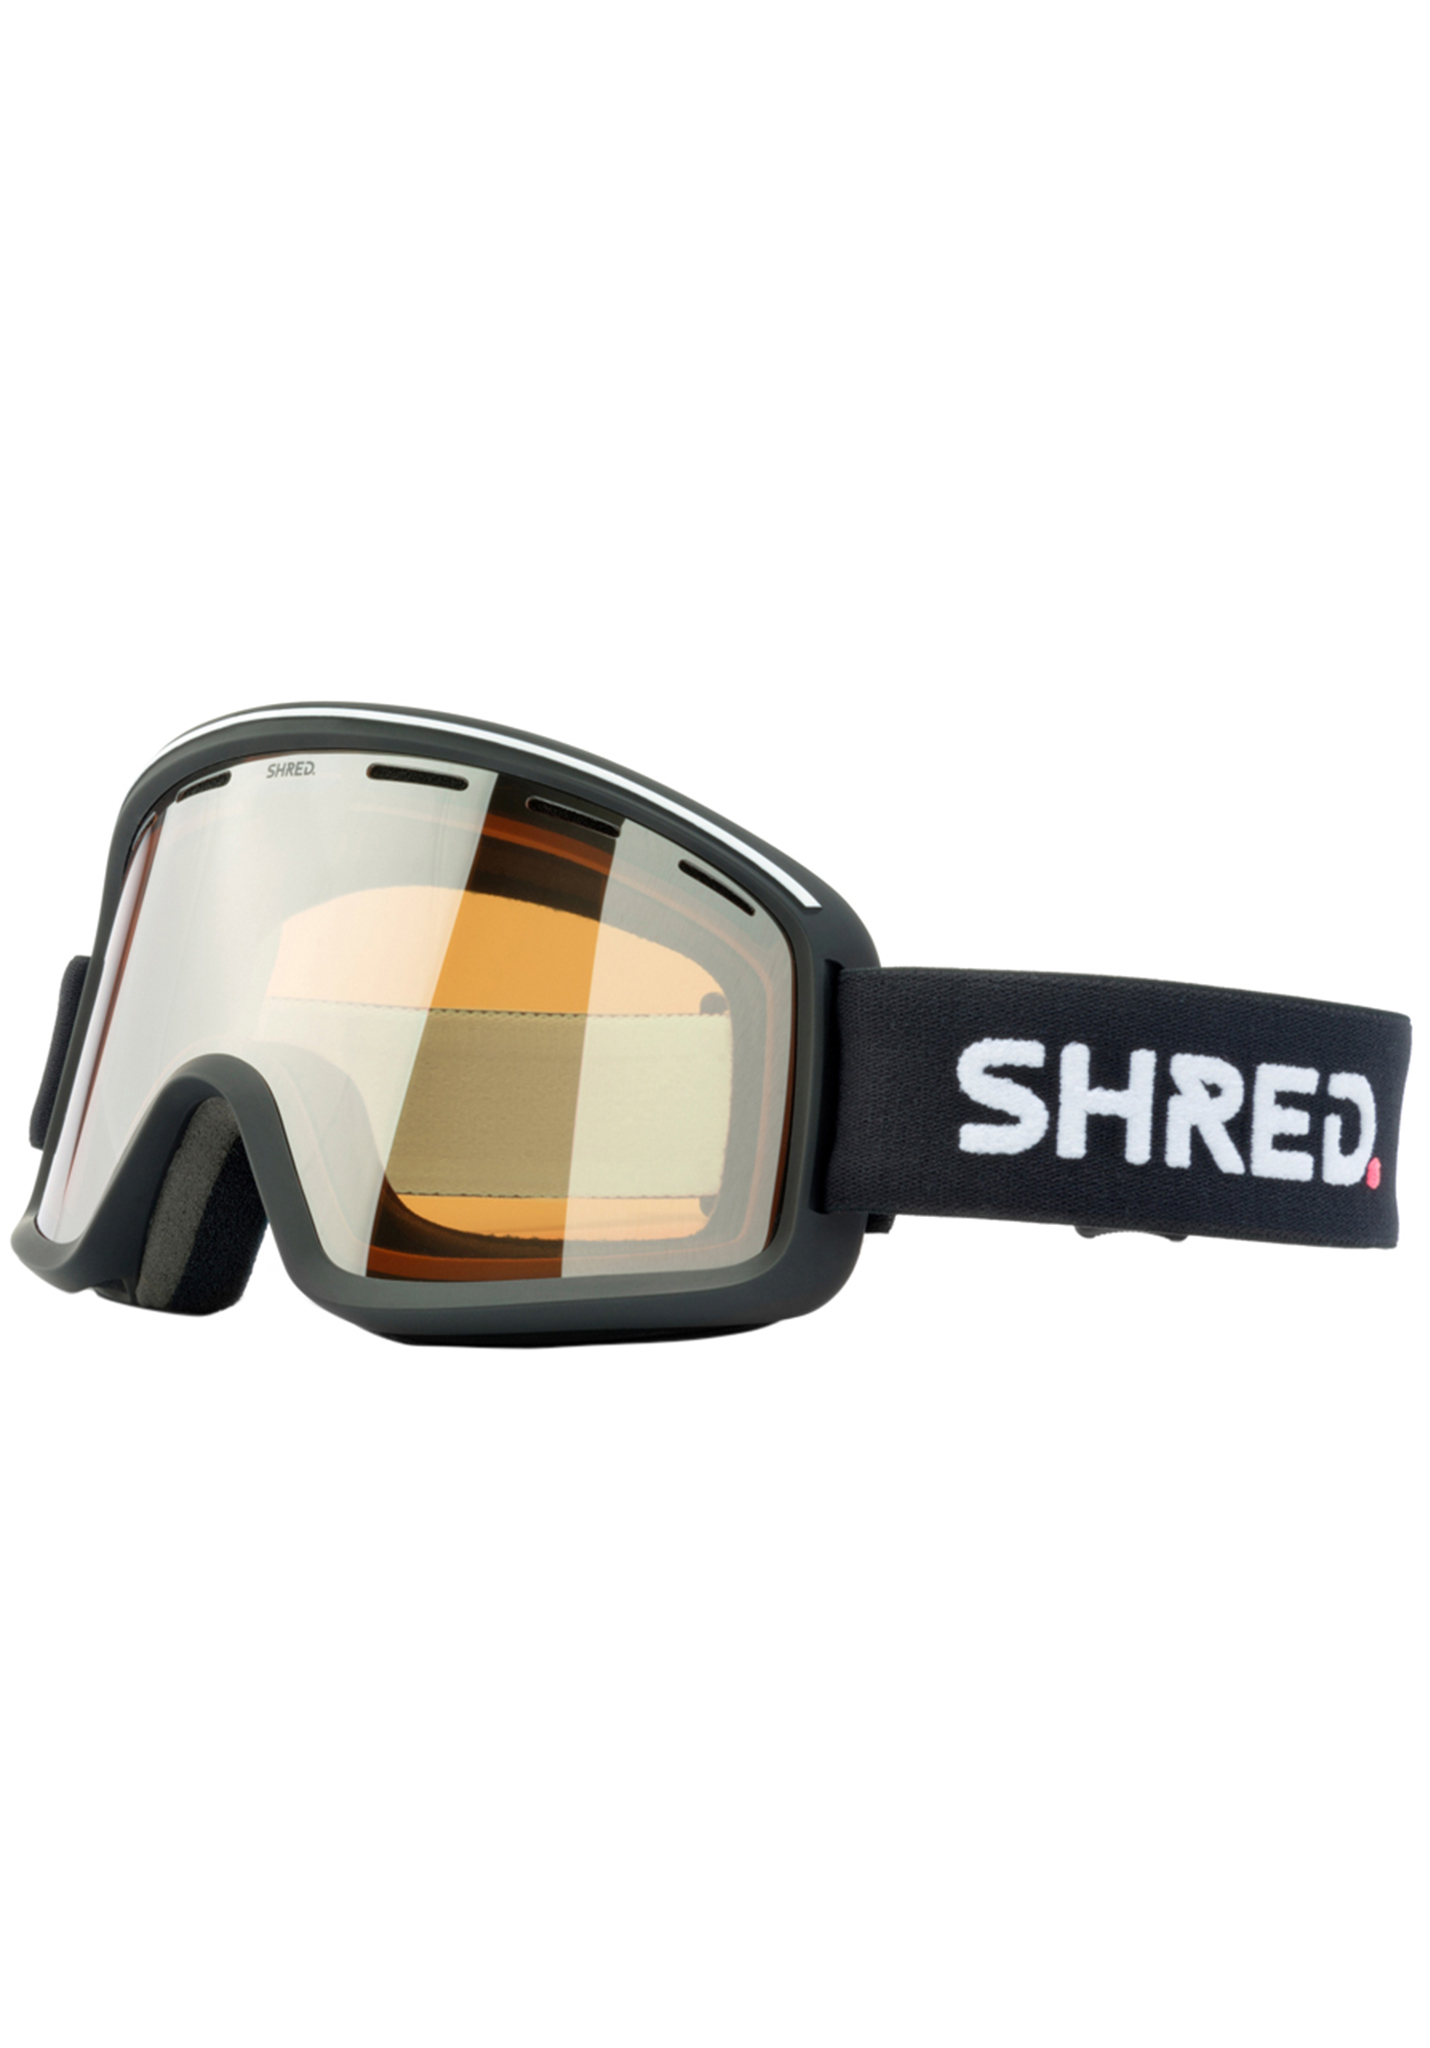 Shred Monocle Snowboardbrillen schwarz/silberner spiegel One Size